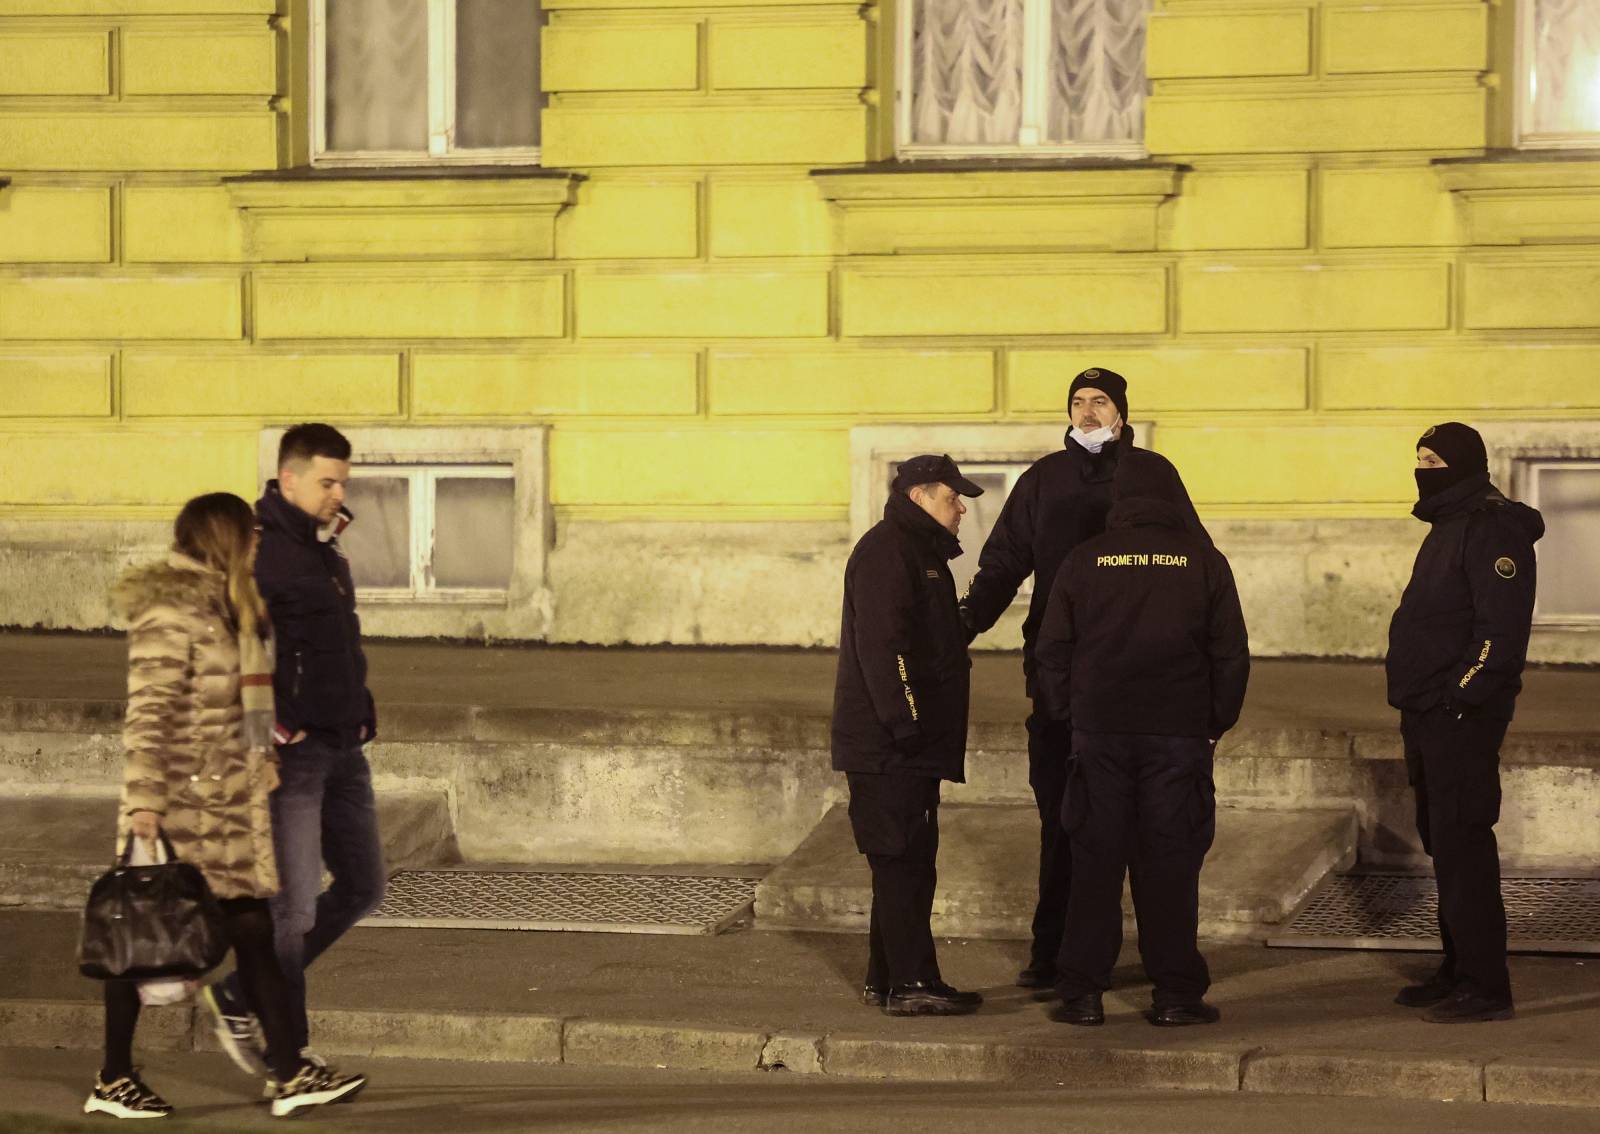 Zagreb: Policija i prometni redari dežuraju oko HNK i ne dopuštaju okupljanje mladima